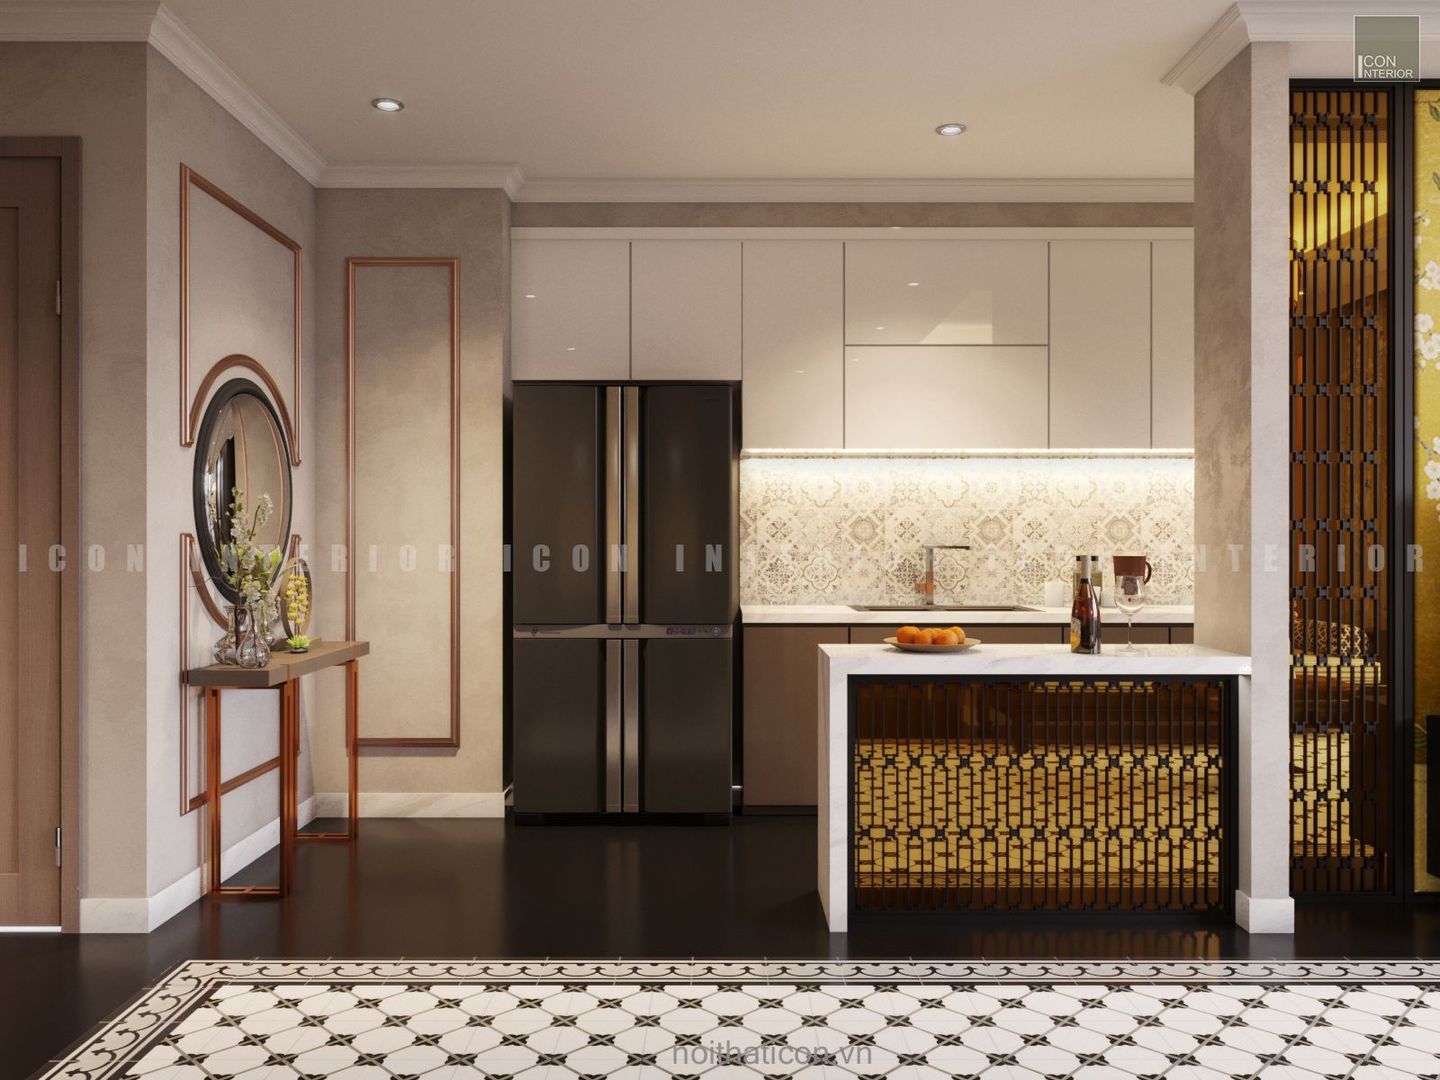 Nội thất căn hộ Vinhomes Central Park thiết kế theo phong cách Đông Dương, ICON INTERIOR ICON INTERIOR Cocinas asiáticas